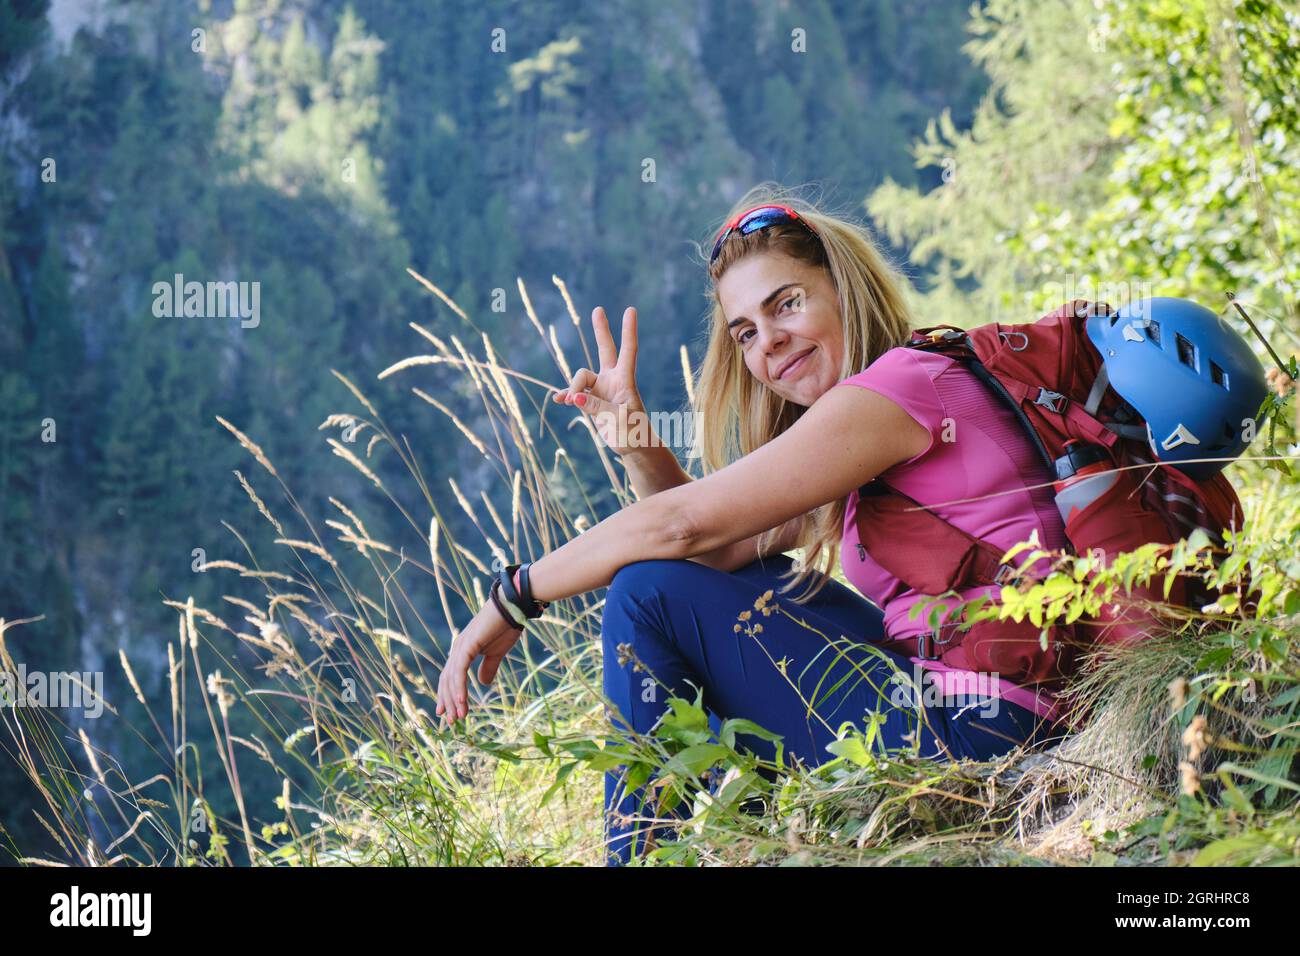 Profilo laterale di donna alpinista con casco attaccato allo zaino, seduto in erba con la mano sollevata come segno di vittoria. Ritratto, avventura. Foto Stock